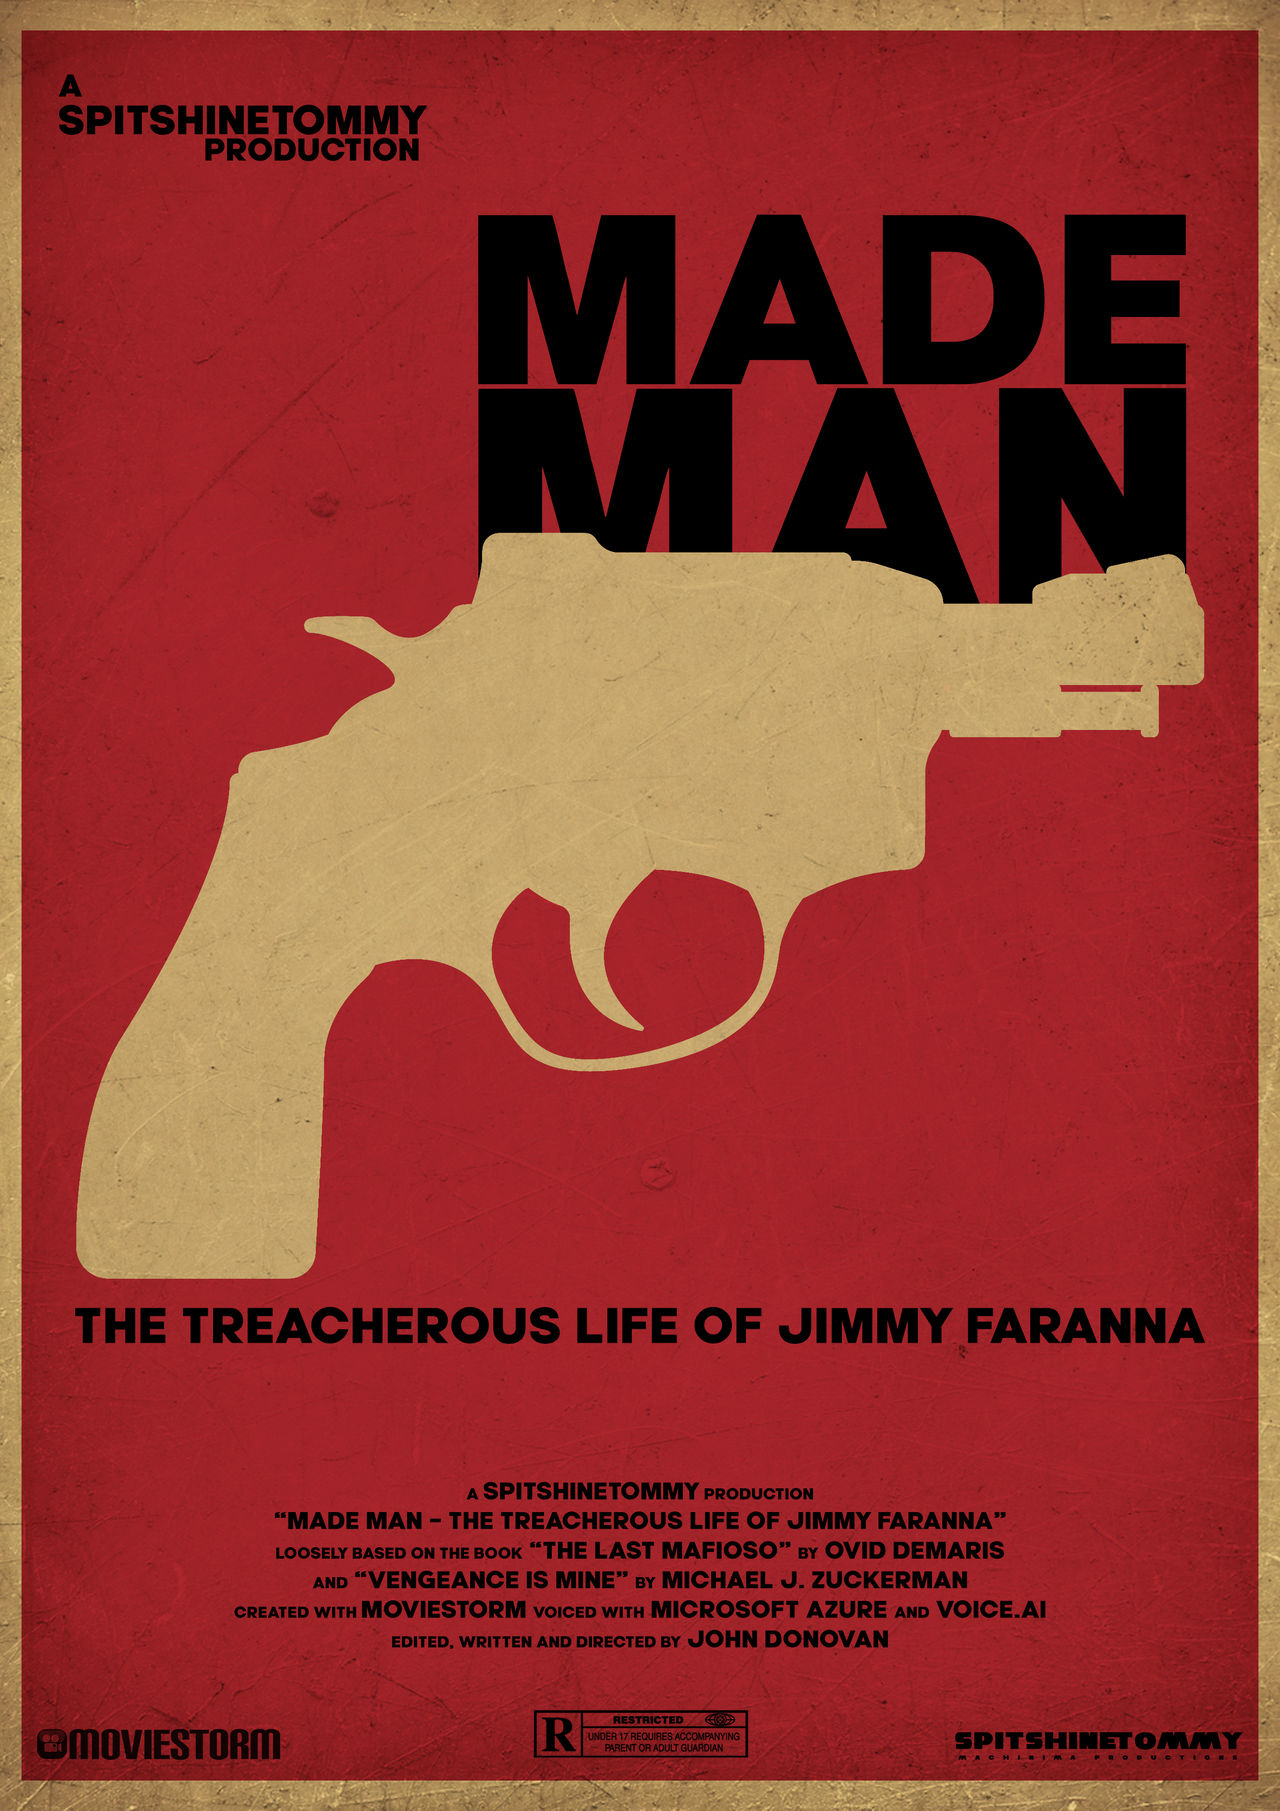 Made Man - The treacherous life of Jimmy Faranna Made_man___poster_1_by_spitshinetommy_dfyjmv5-fullview.jpg?token=eyJ0eXAiOiJKV1QiLCJhbGciOiJIUzI1NiJ9.eyJzdWIiOiJ1cm46YXBwOjdlMGQxODg5ODIyNjQzNzNhNWYwZDQxNWVhMGQyNmUwIiwiaXNzIjoidXJuOmFwcDo3ZTBkMTg4OTgyMjY0MzczYTVmMGQ0MTVlYTBkMjZlMCIsIm9iaiI6W1t7ImhlaWdodCI6Ijw9MTgxMSIsInBhdGgiOiJcL2ZcLzIxODEyZmQ4LTg5YWItNGEwZC05M2UwLWE2YzZkZGM0YTc2NlwvZGZ5am12NS02ZWQzMWQwYi1iYTIyLTQ0OTItYmU0Mi1hYTIwNWYwNGQwYTAucG5nIiwid2lkdGgiOiI8PTEyODAifV1dLCJhdWQiOlsidXJuOnNlcnZpY2U6aW1hZ2Uub3BlcmF0aW9ucyJdfQ